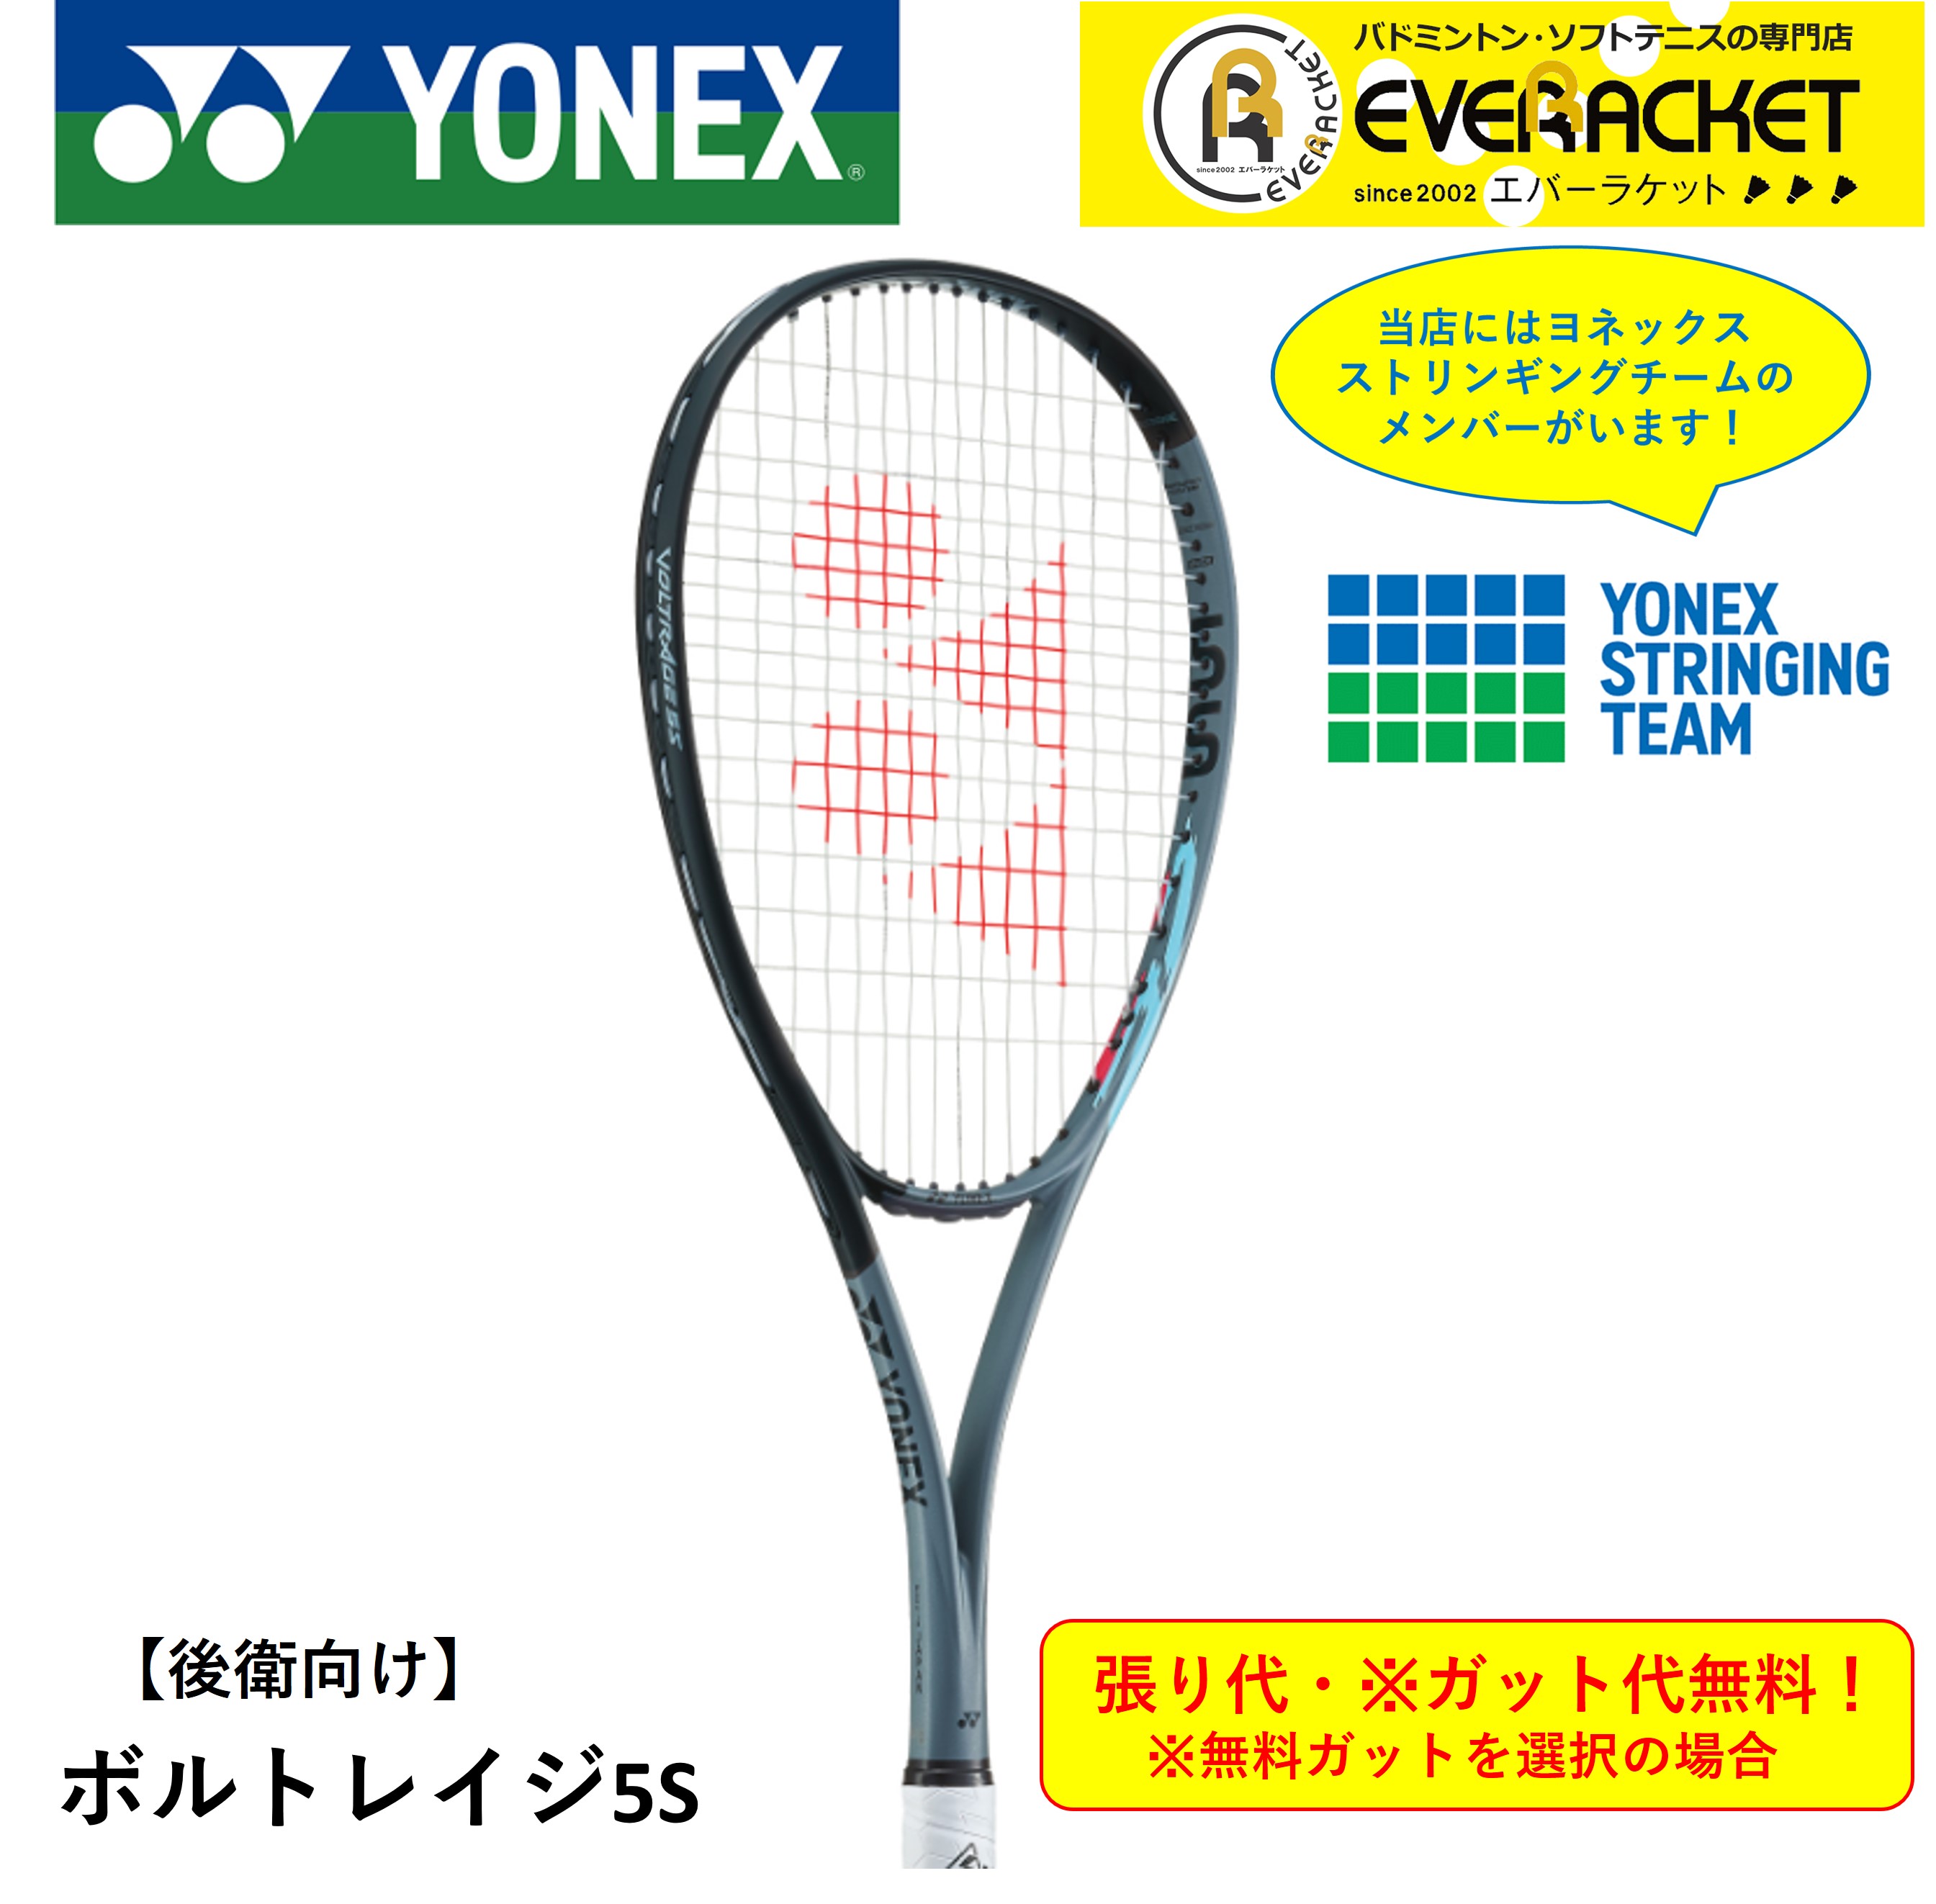 【最短出荷】【ガット代・張り代無料】【後衛用】YONEX ヨネックス バドミントン ソフトテニスラケット ボルトレイジ5S VR5S  エバーラケット 